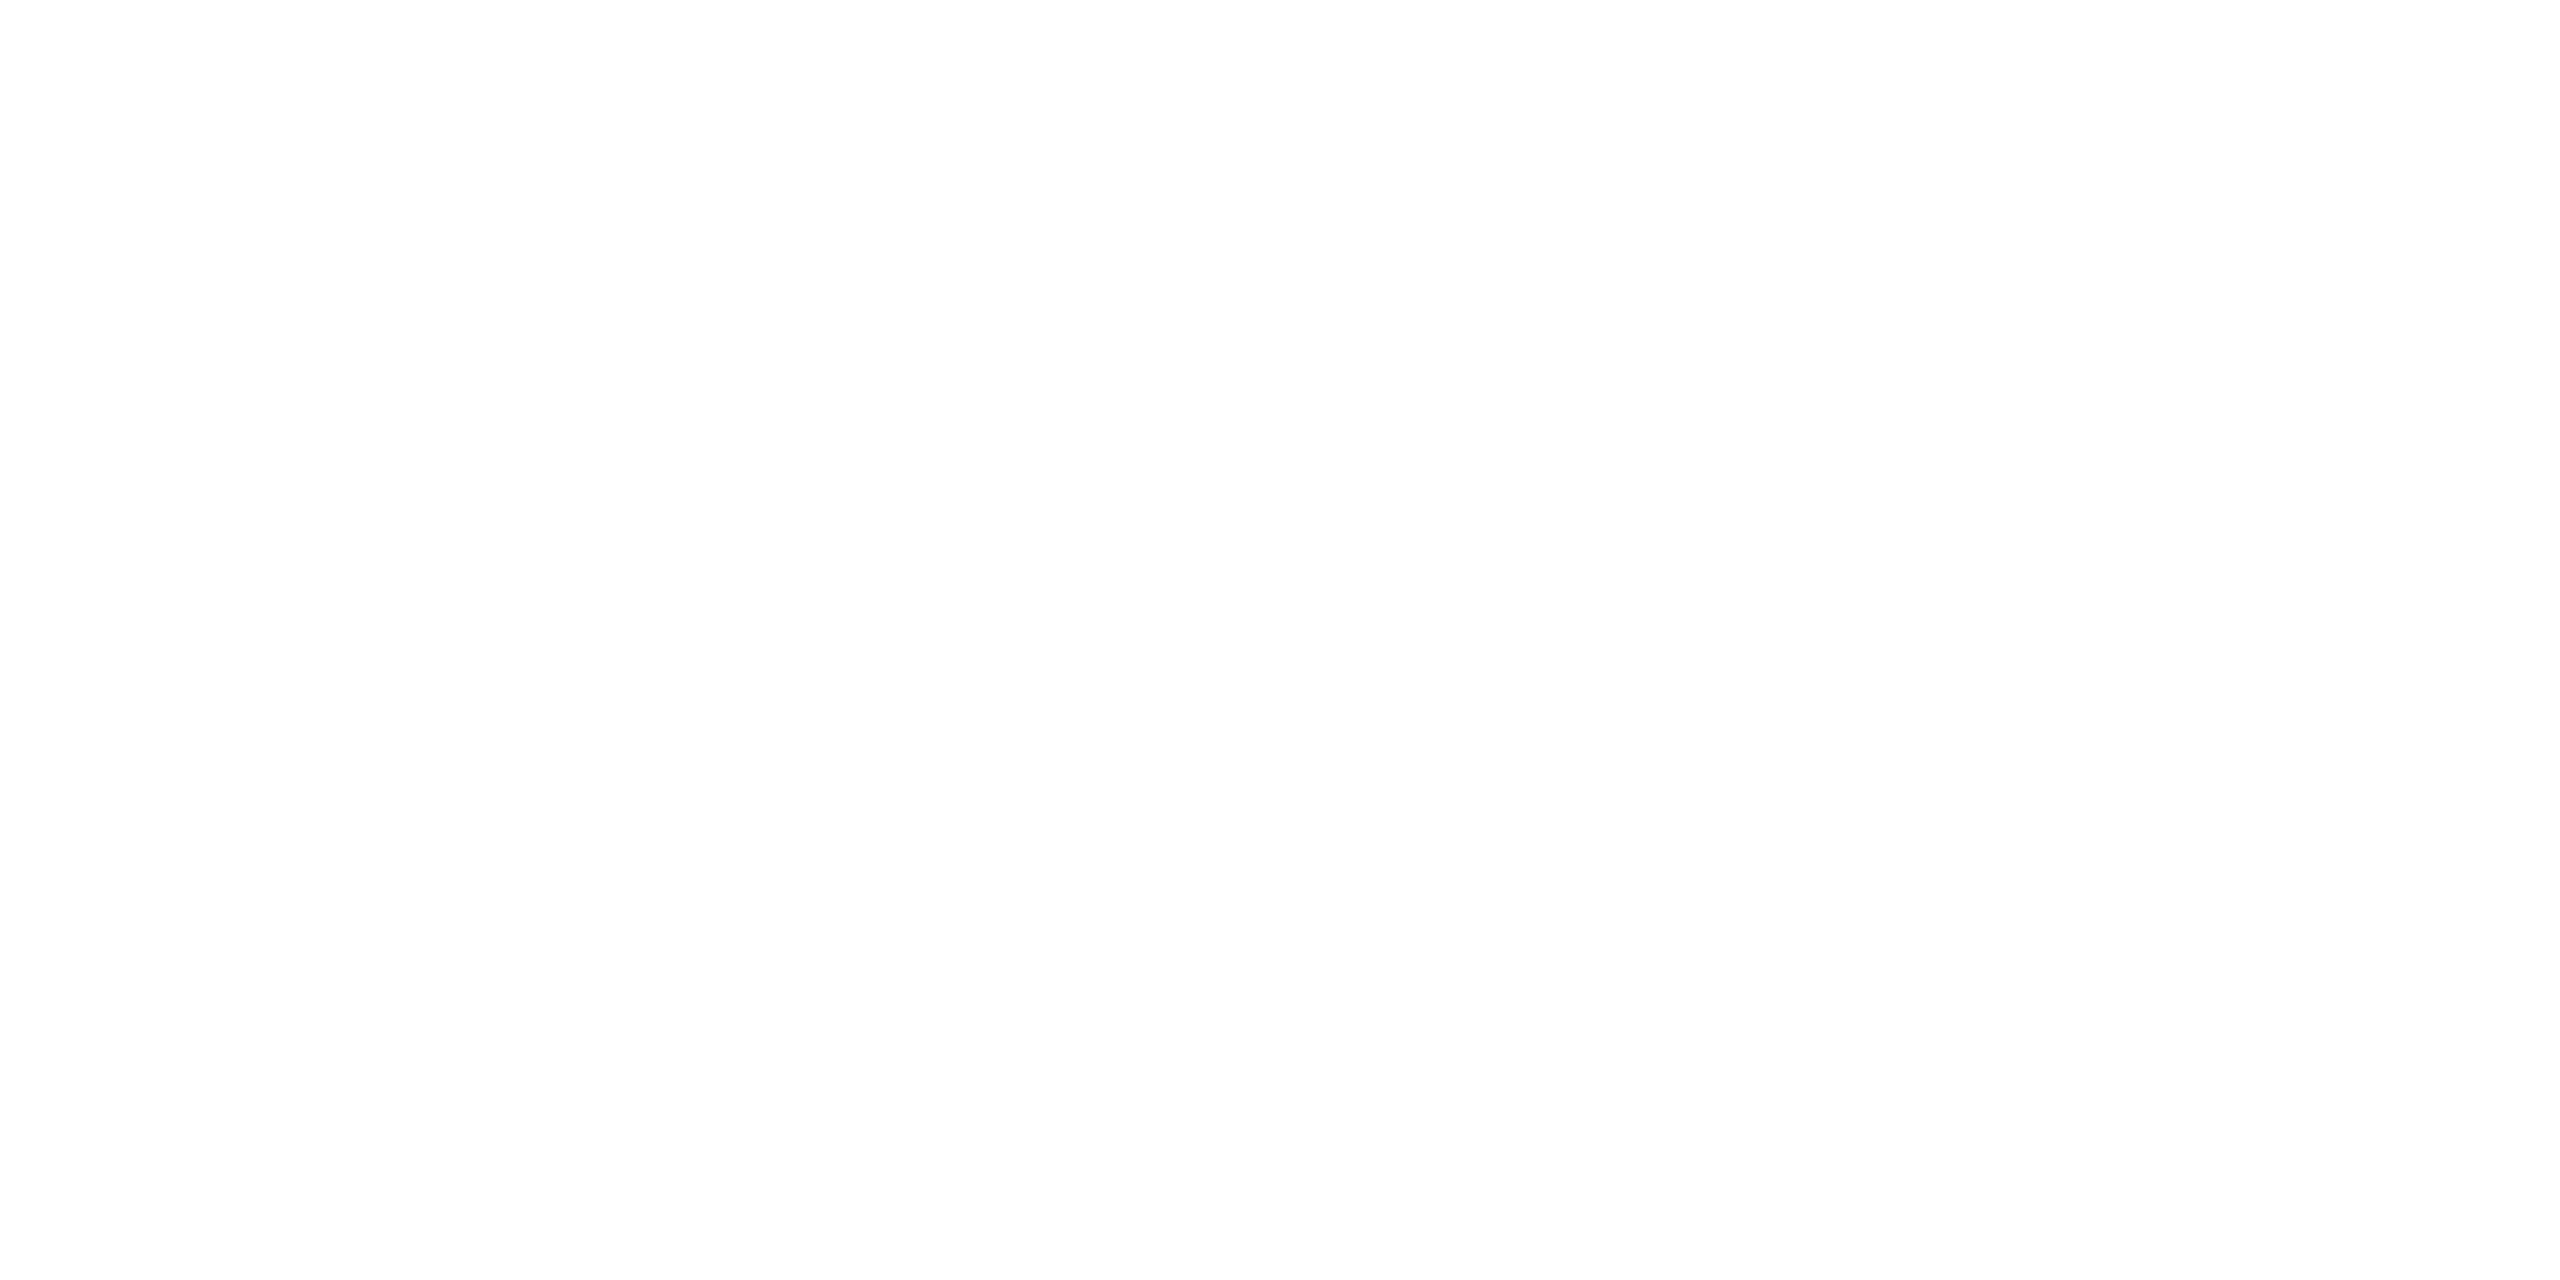 Keller Williams Realty logo in white